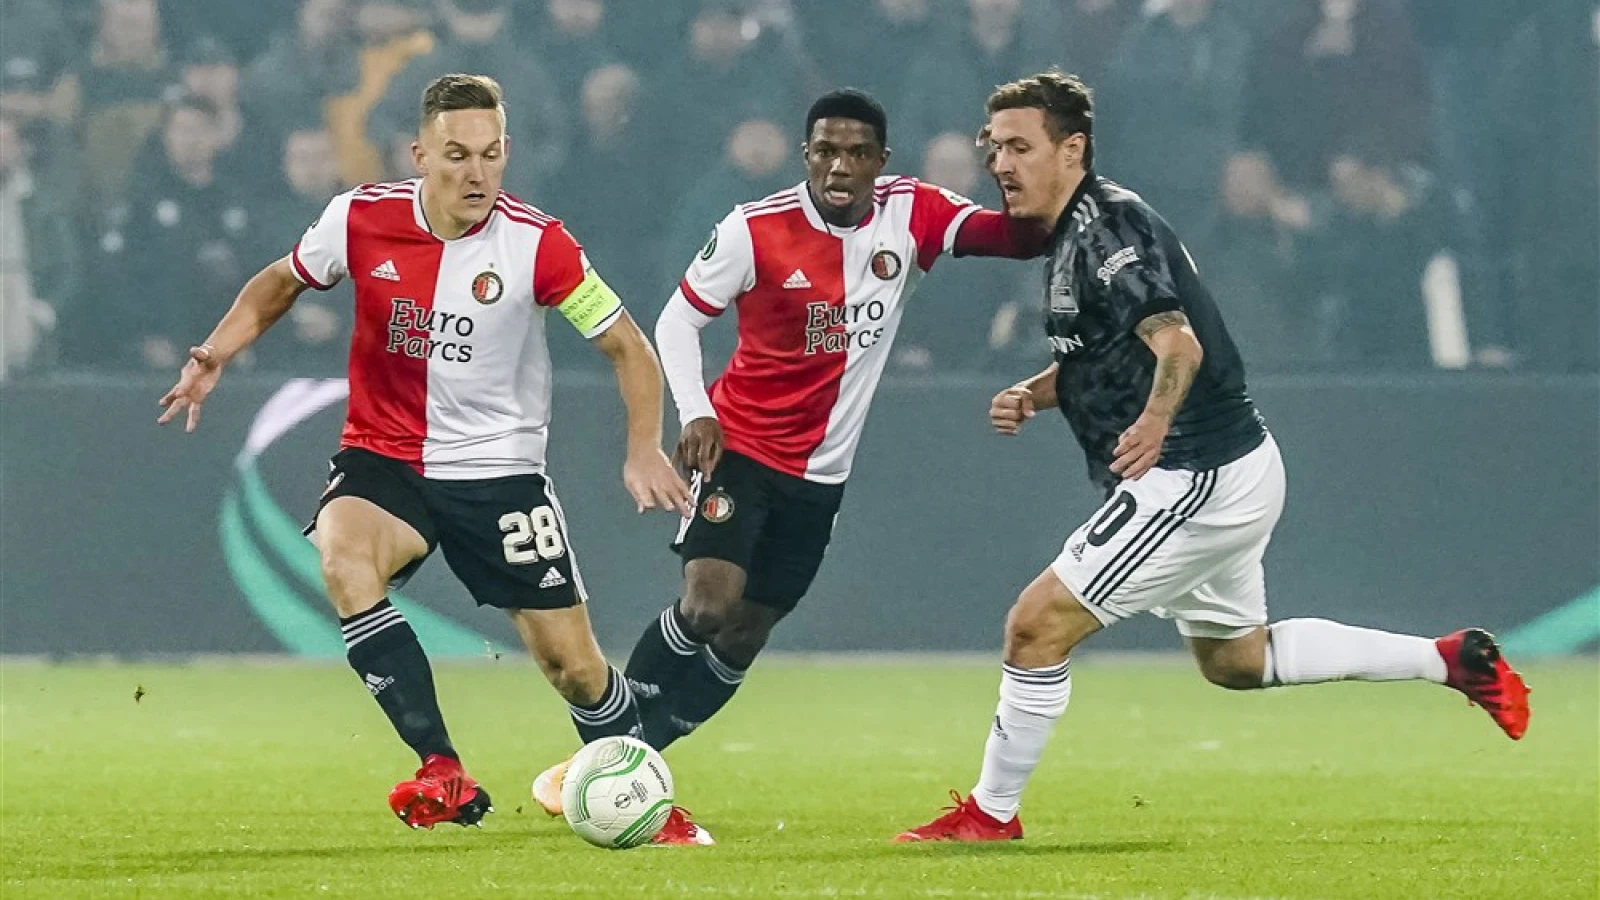 LIVE | Feyenoord - 1. FC Union Berlin 3-1 | Einde wedstrijd